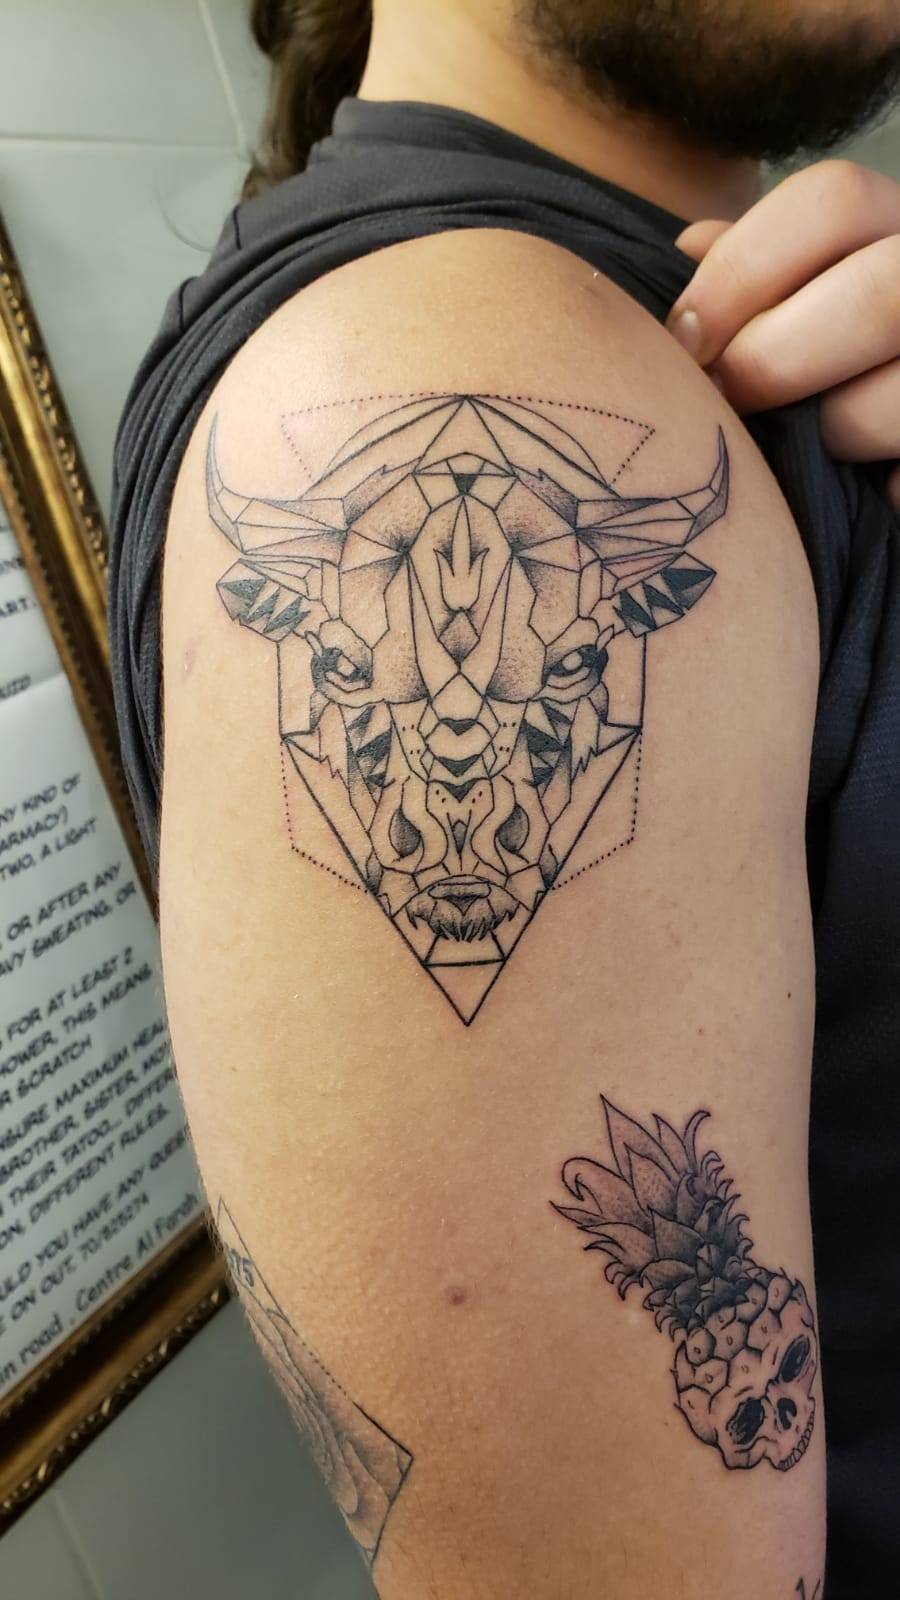 Tattoo uploaded by Dani Nihil • Taurus tattoo • Tattoodo